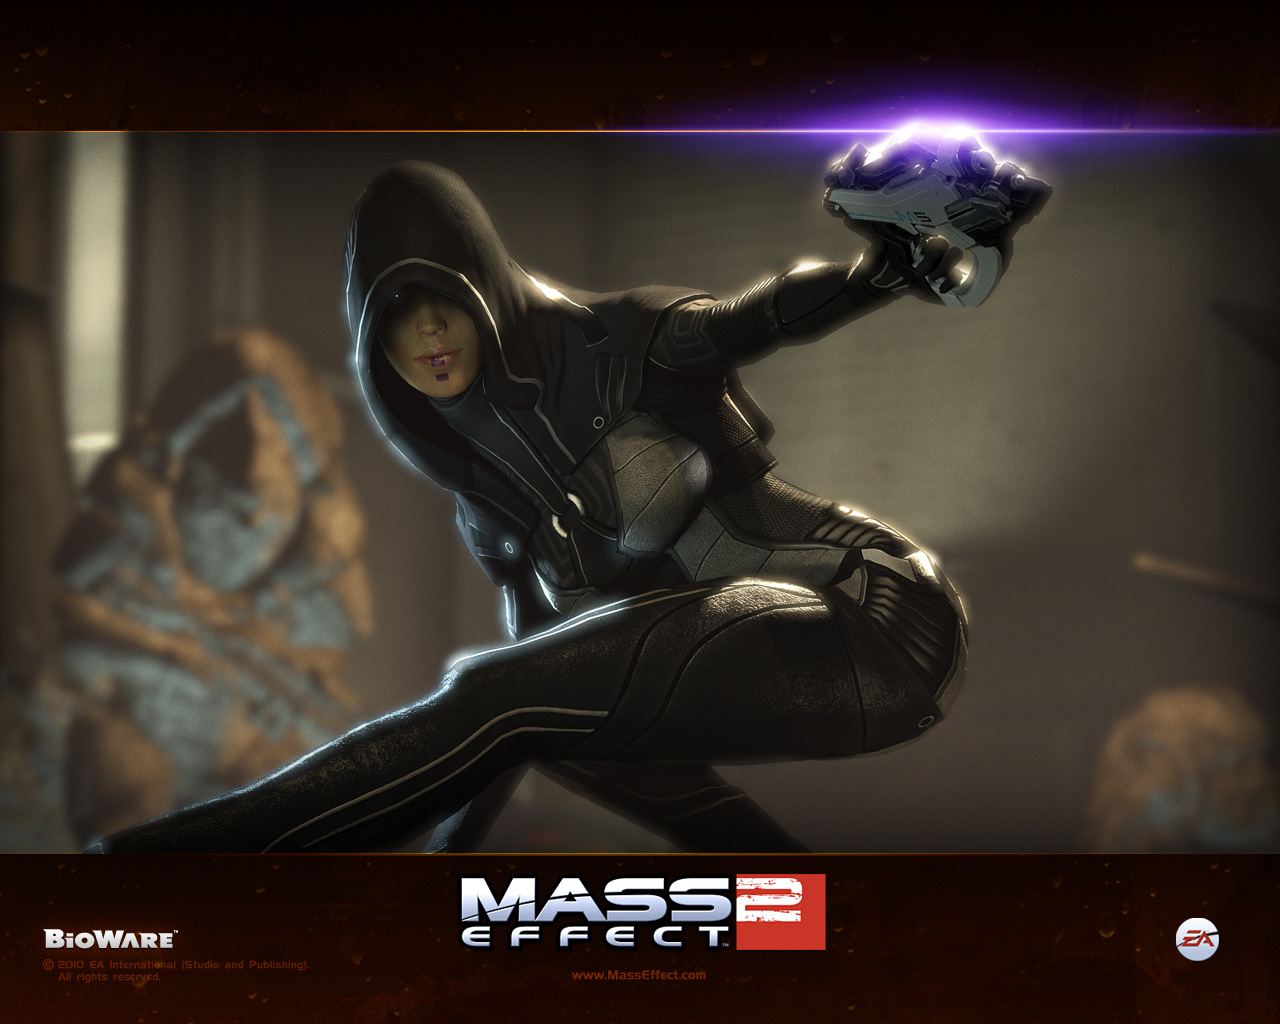 Mass Effect HD Wallpaper